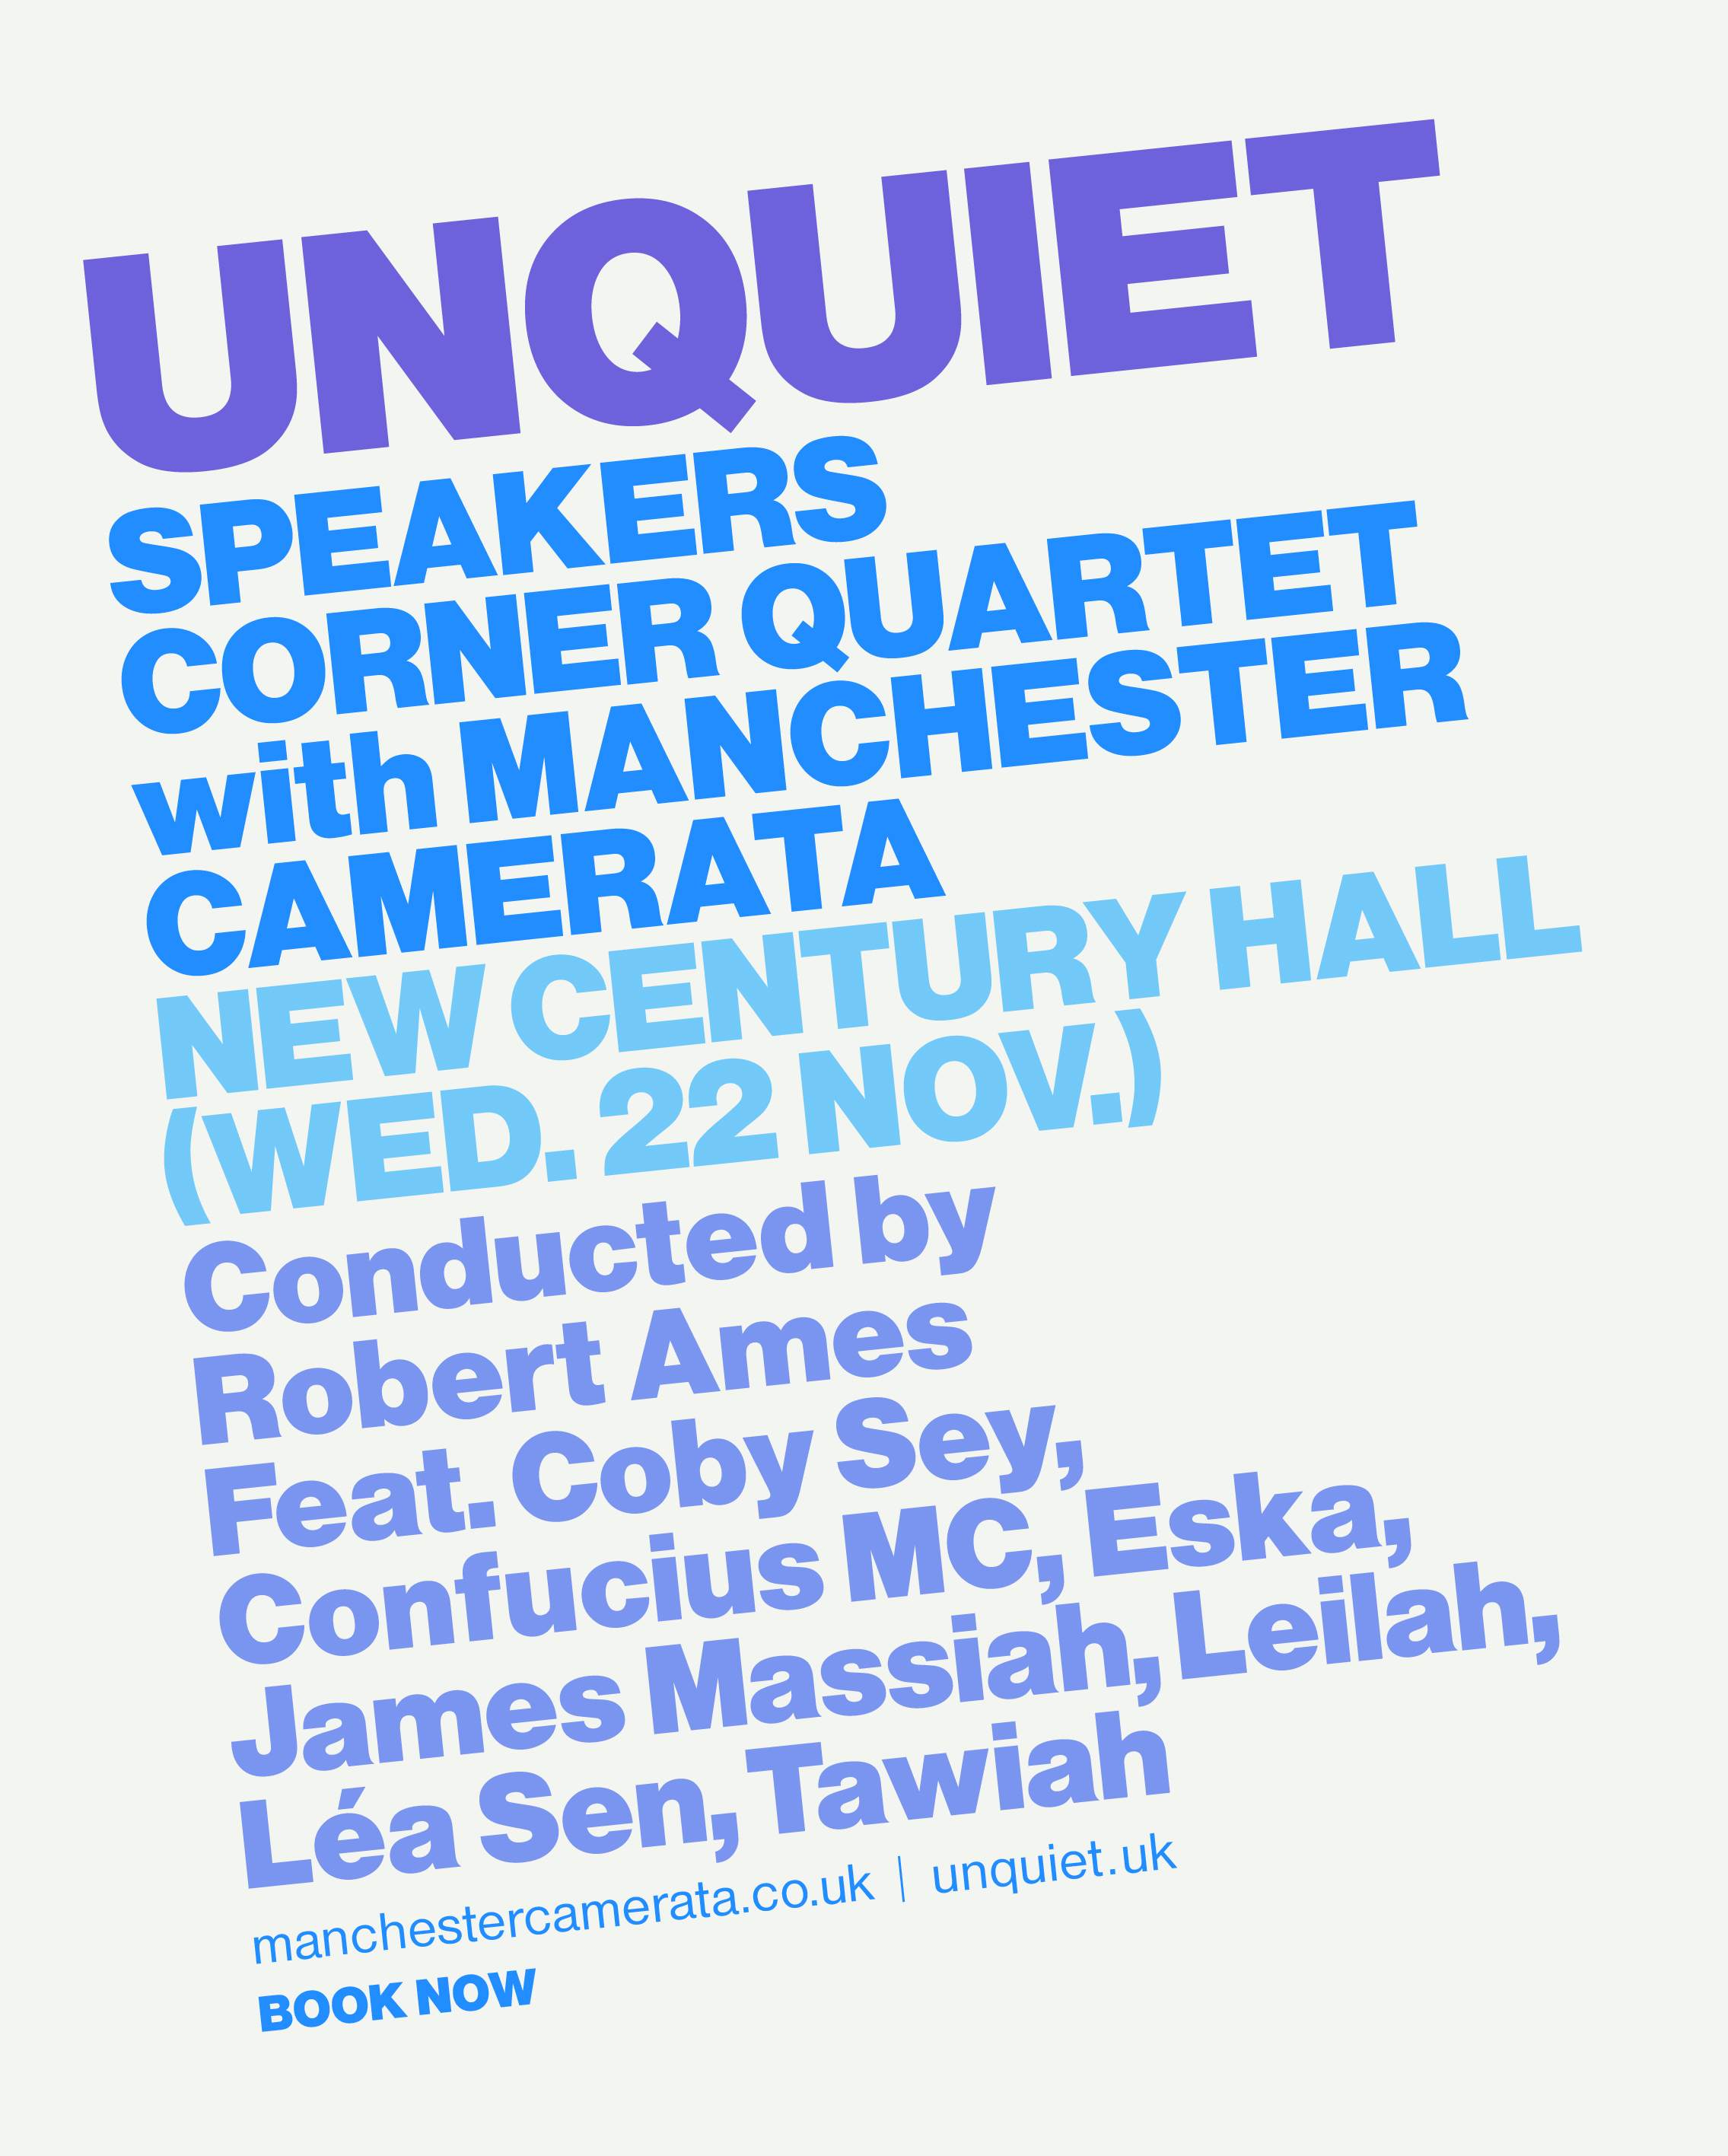 Unquiet: Speakers Corner Quartet with Manchester Camerata - フライヤー表